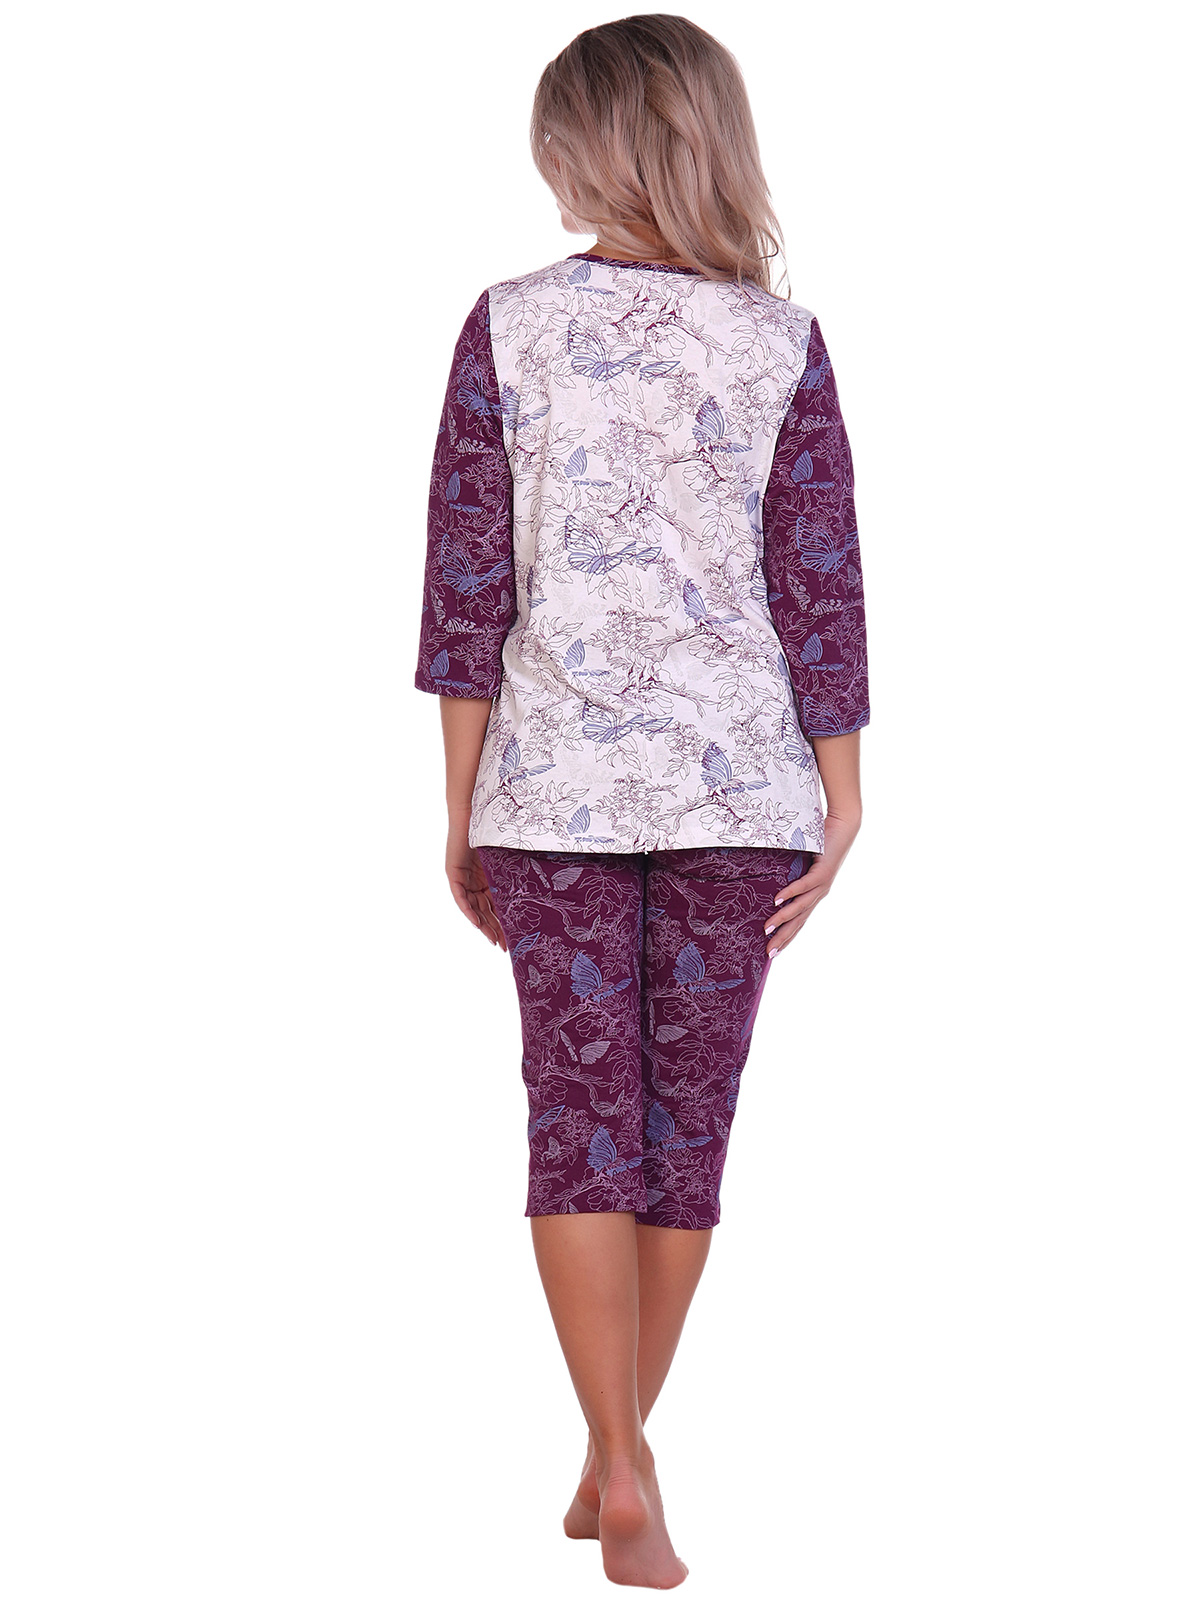 Жен. пижама арт. 16-0705 Бордовый р. 62 НСД Трикотаж, размер 62 - фото 4